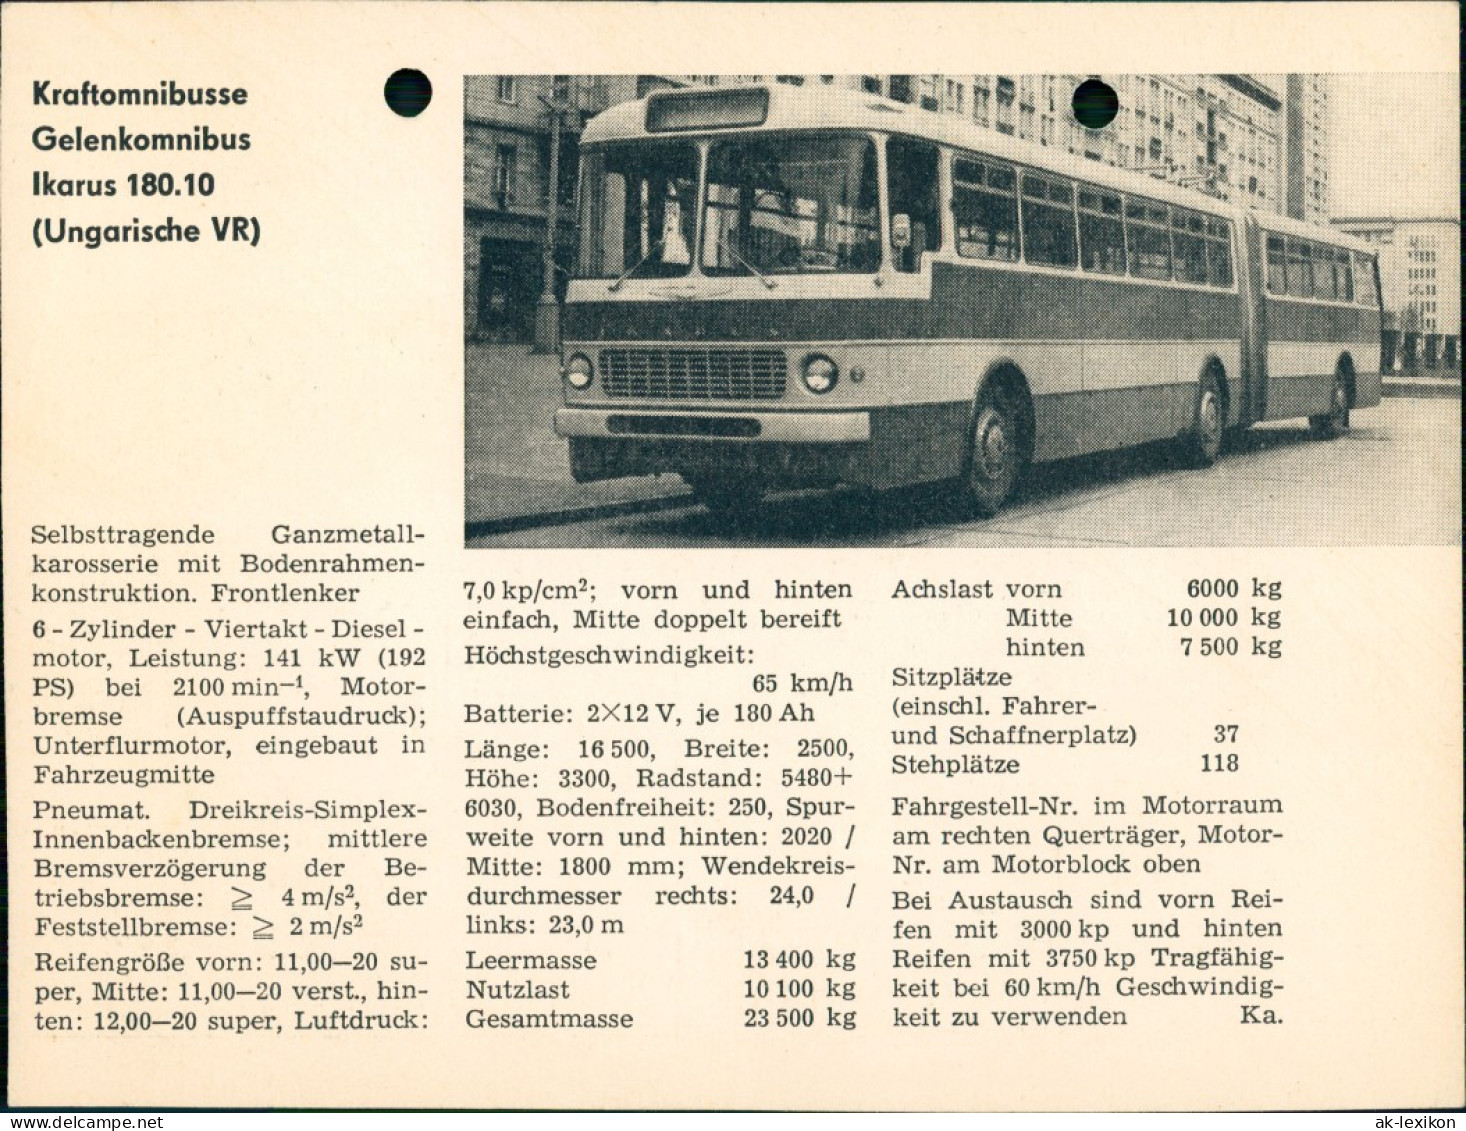 Bus Kraftomnibusse Gelenkomnibus Ikarus 180.10 (Ungarische VR) 1959 - Autobus & Pullman